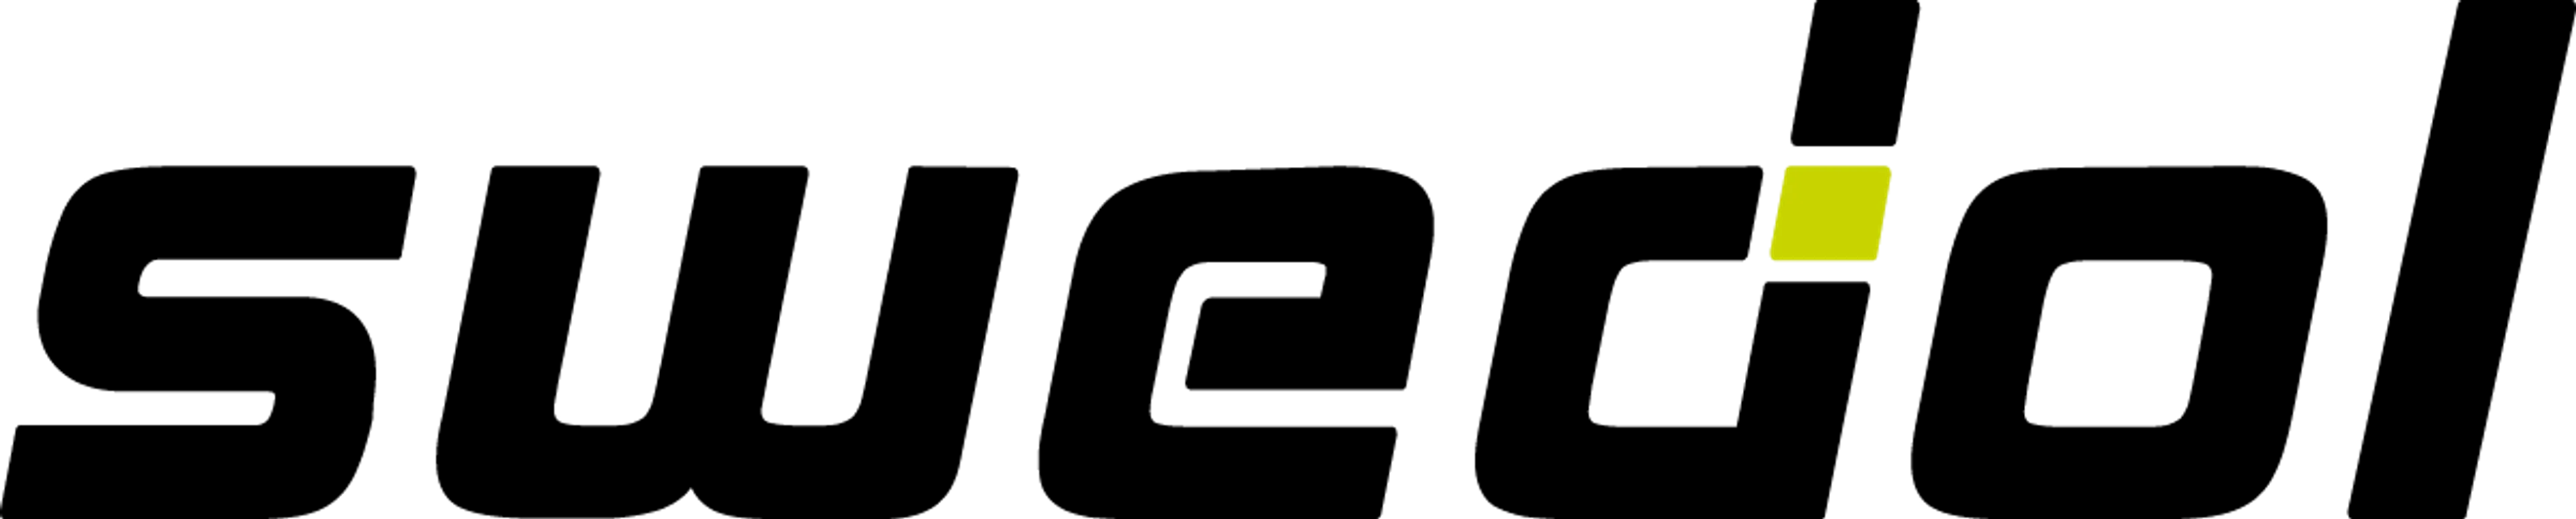 SWEDOL logo